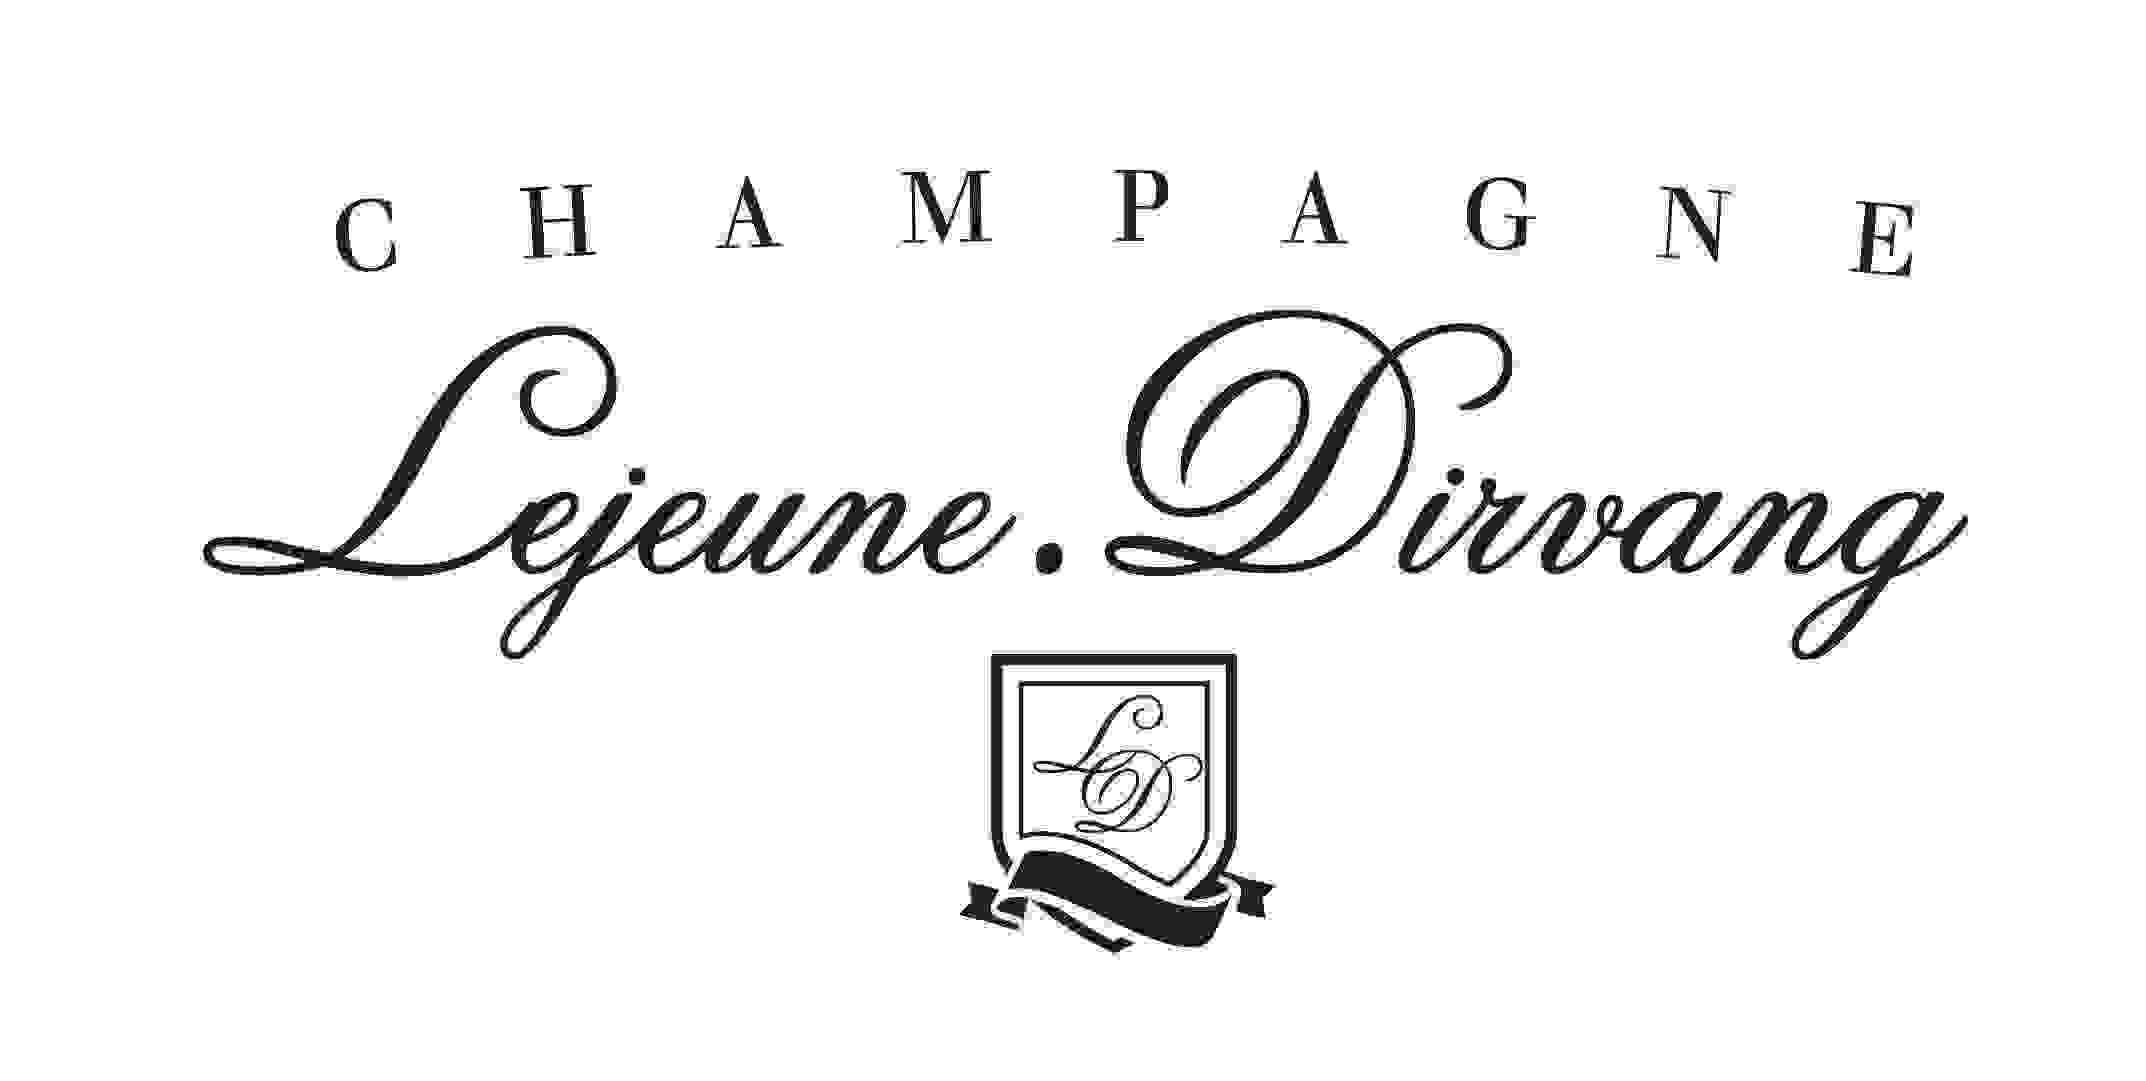 Champagne Lejeune-Dirvang